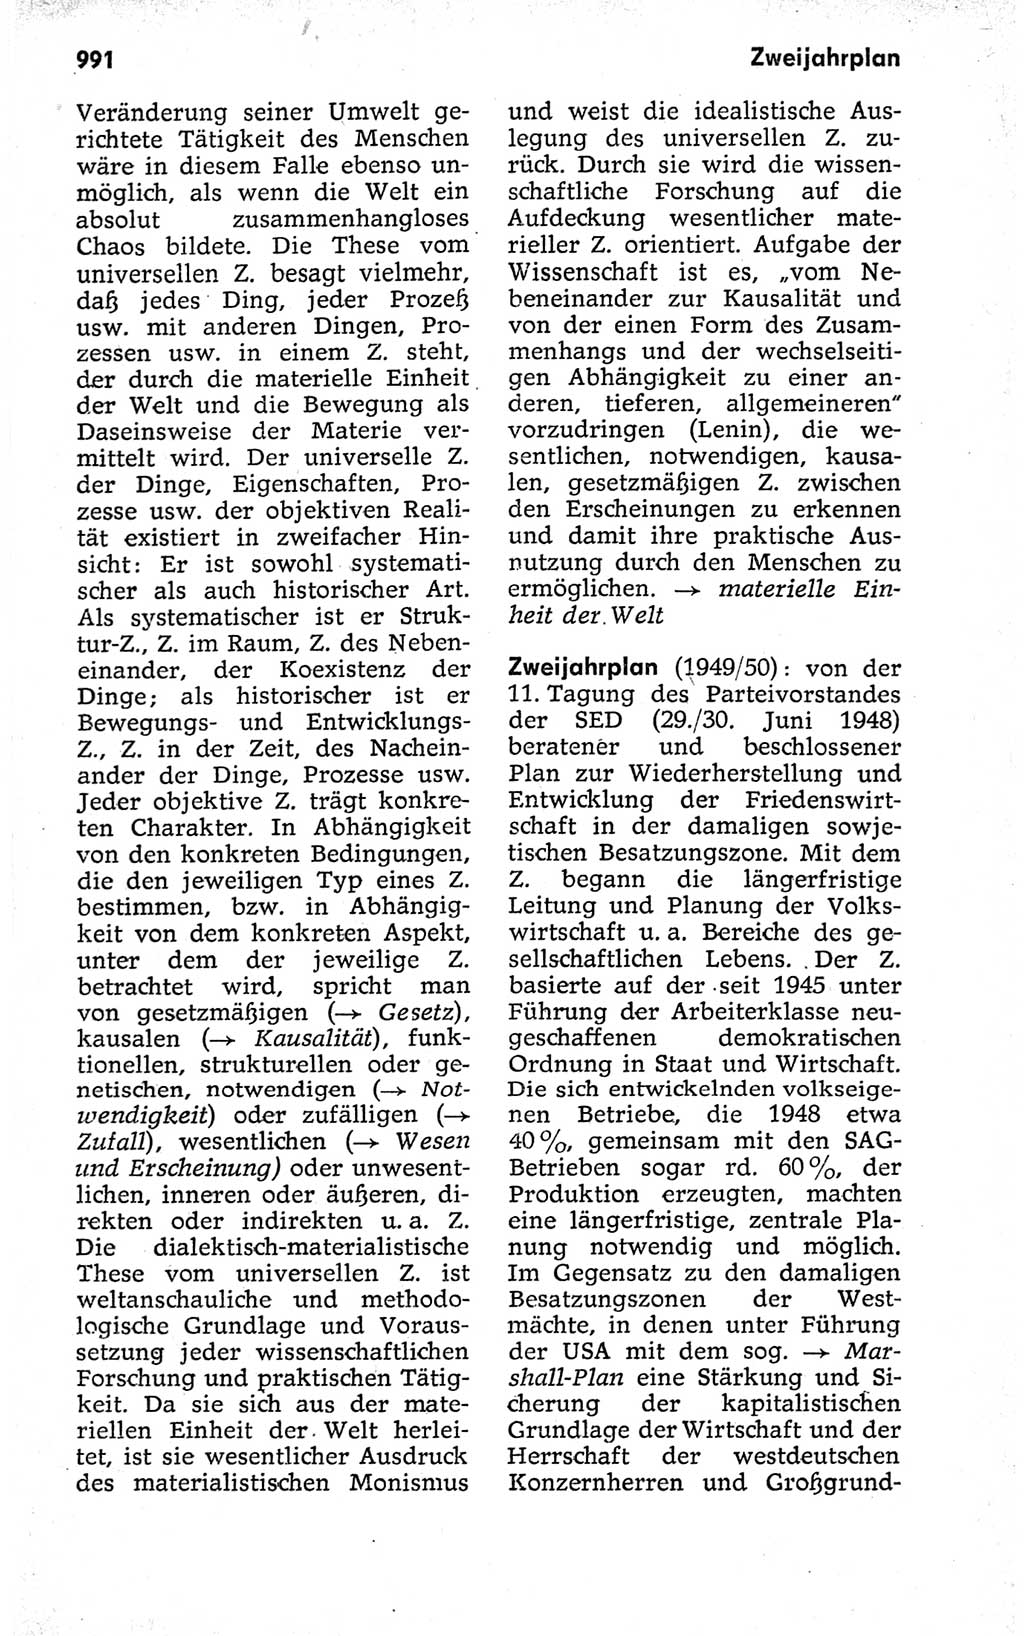 Kleines politisches Wörterbuch [Deutsche Demokratische Republik (DDR)] 1973, Seite 991 (Kl. pol. Wb. DDR 1973, S. 991)